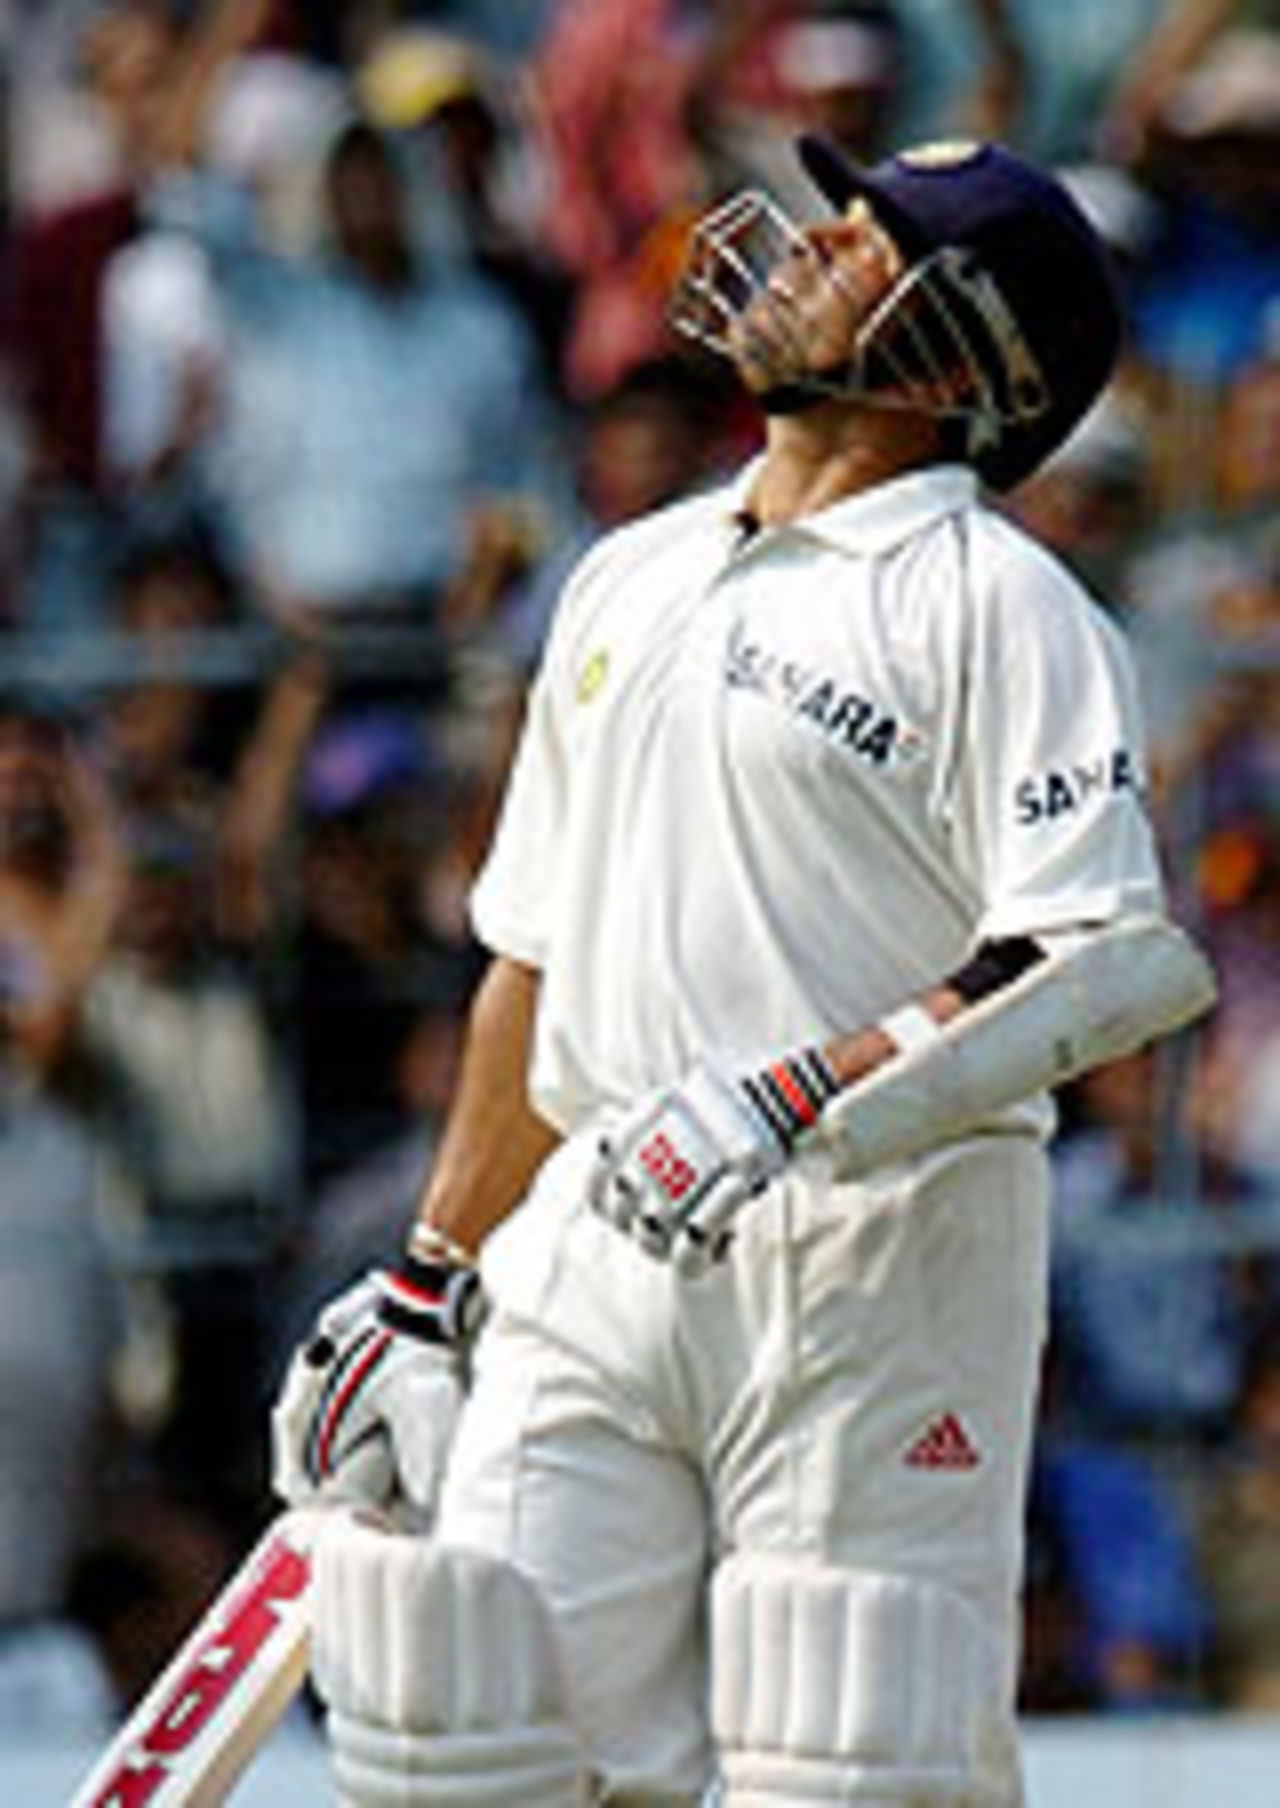 Sachin Tendulkar reaches his 10,000th run, India v Pakistan, 2nd Test, Kolkata, March 16, 2005